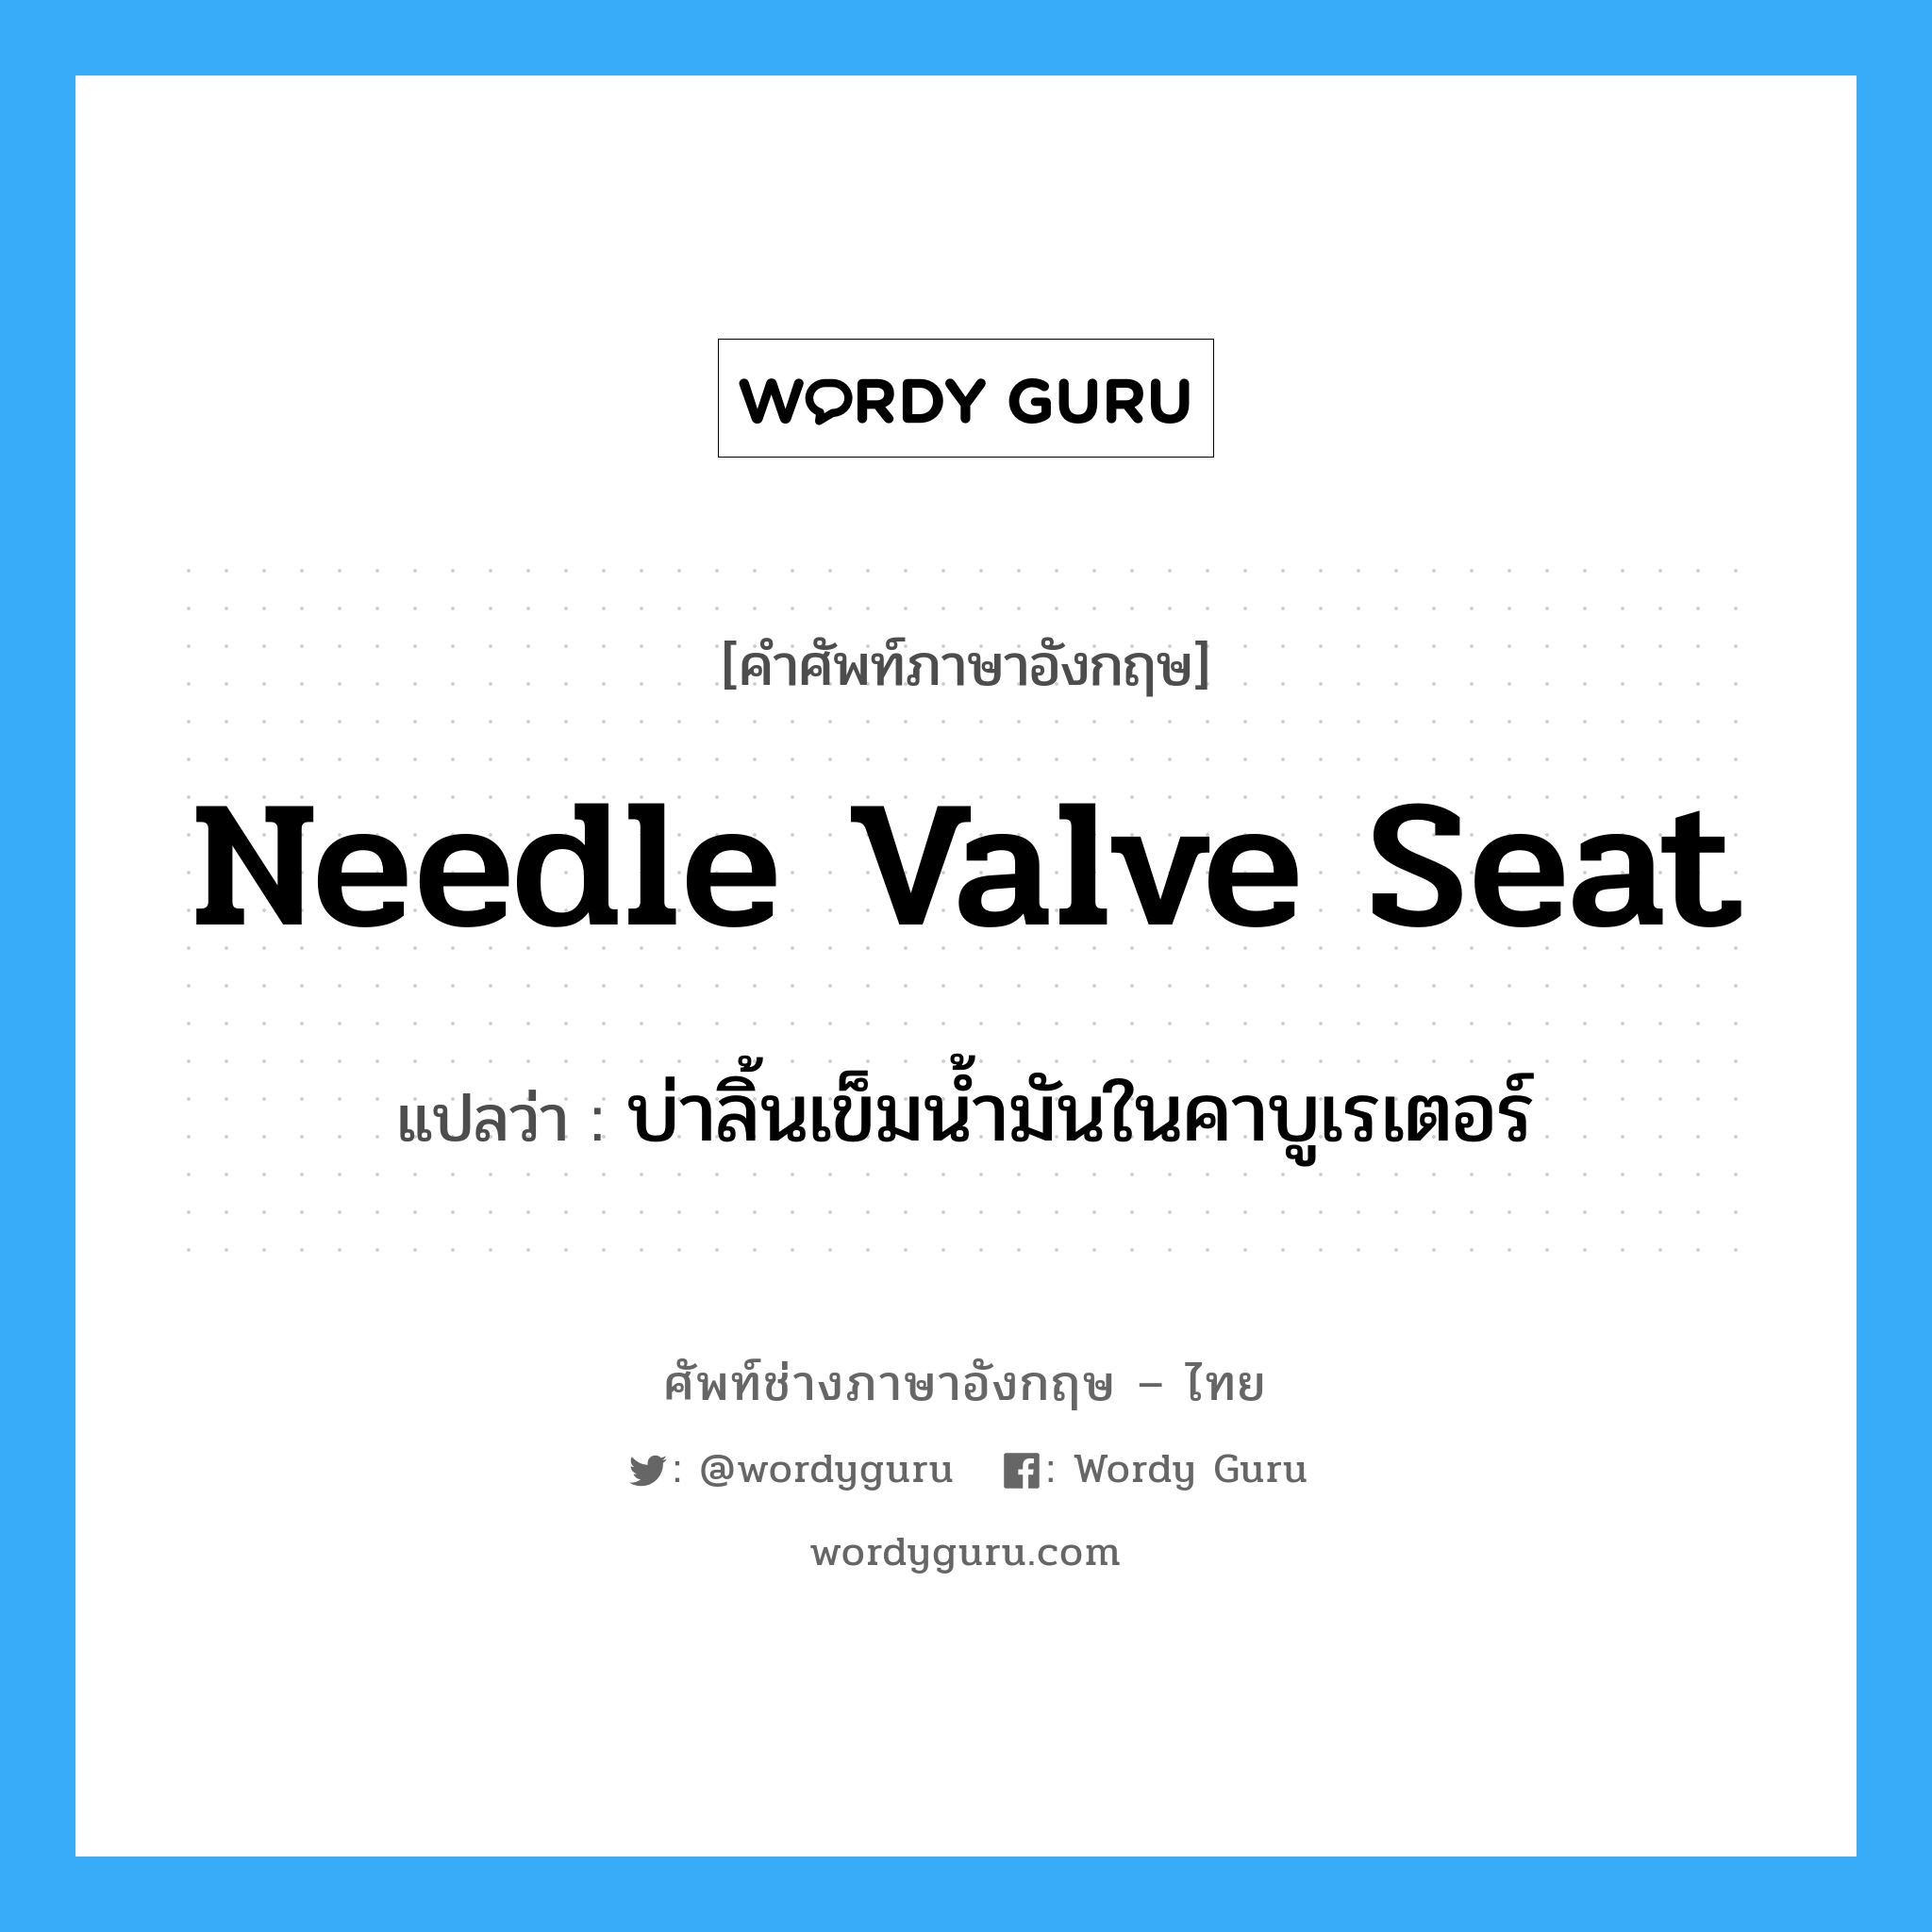 needle valve seat แปลว่า?, คำศัพท์ช่างภาษาอังกฤษ - ไทย needle valve seat คำศัพท์ภาษาอังกฤษ needle valve seat แปลว่า บ่าลิ้นเข็มน้ำมันในคาบูเรเตอร์